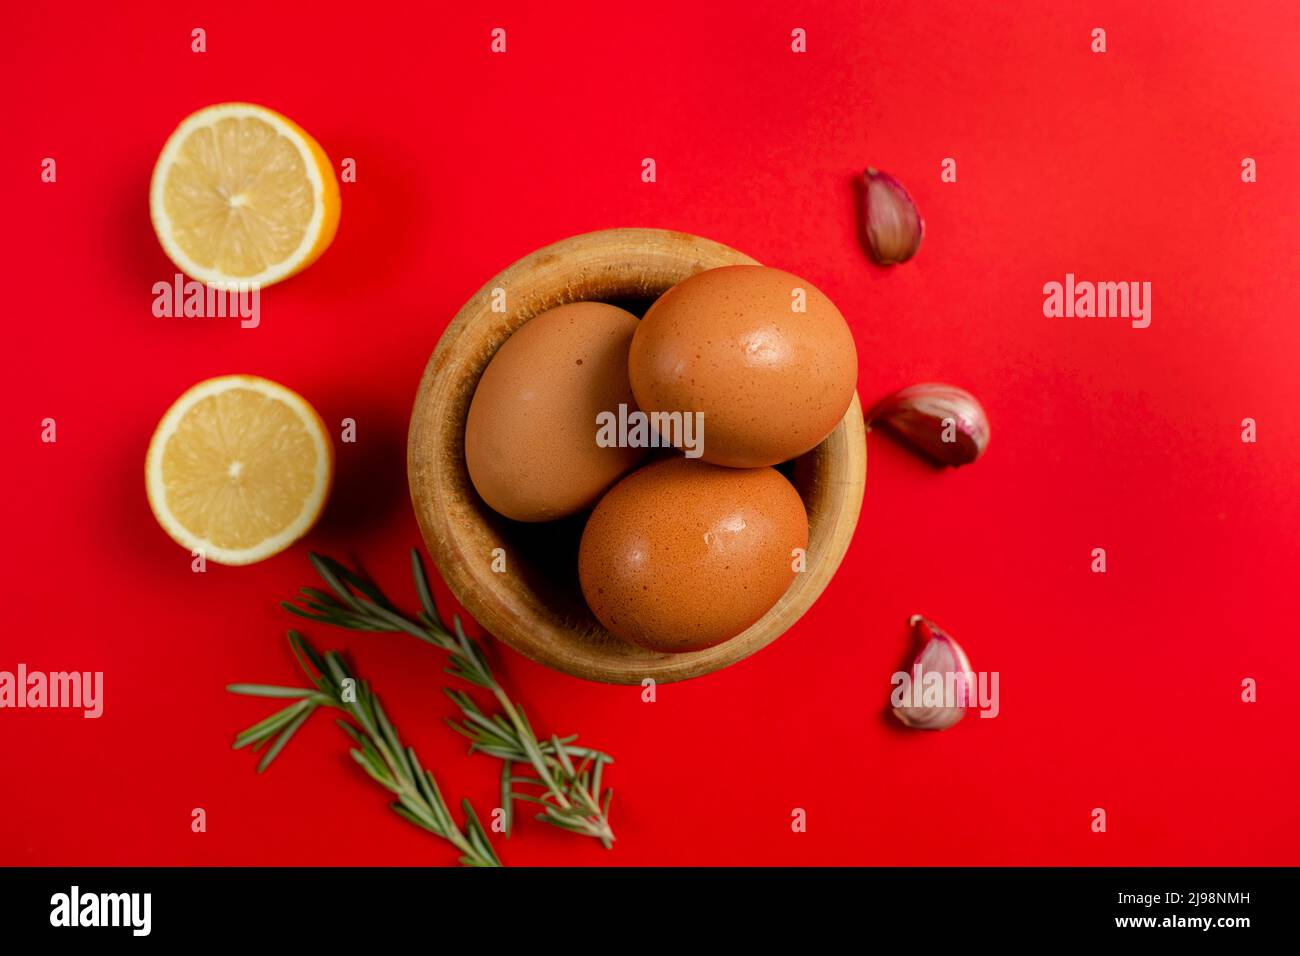 Vista superior de huevos, limones e ingredientes de ajo necesarios para hacer la rica salsa casera de alioli salsa típica española Foto de stock